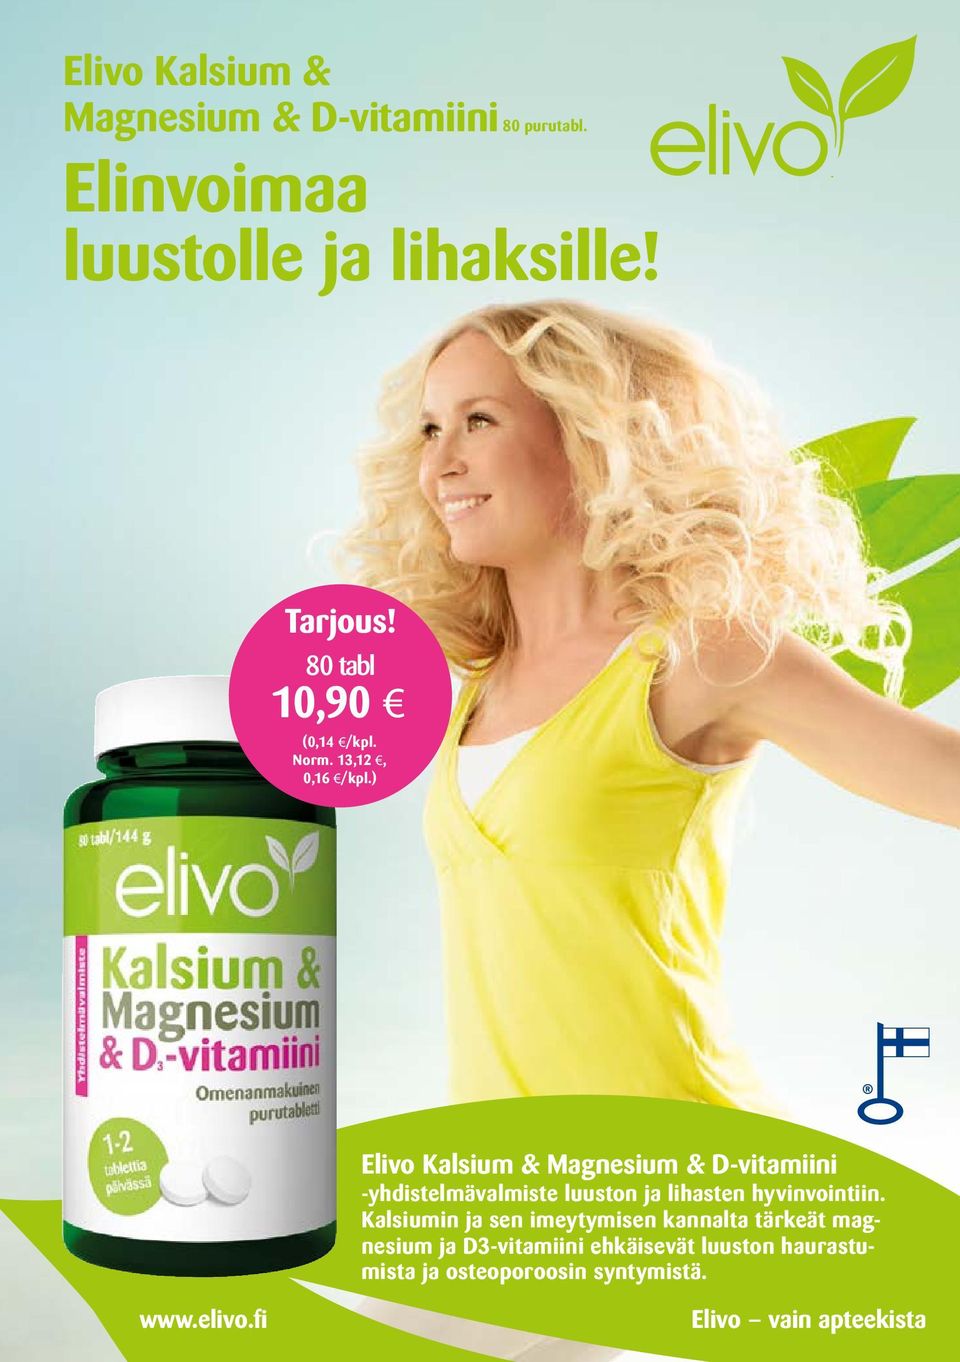 ) Elivo Kalsium & Magnesium & D-vitamiini -yhdistelmävalmiste luuston ja lihasten hyvinvointiin.